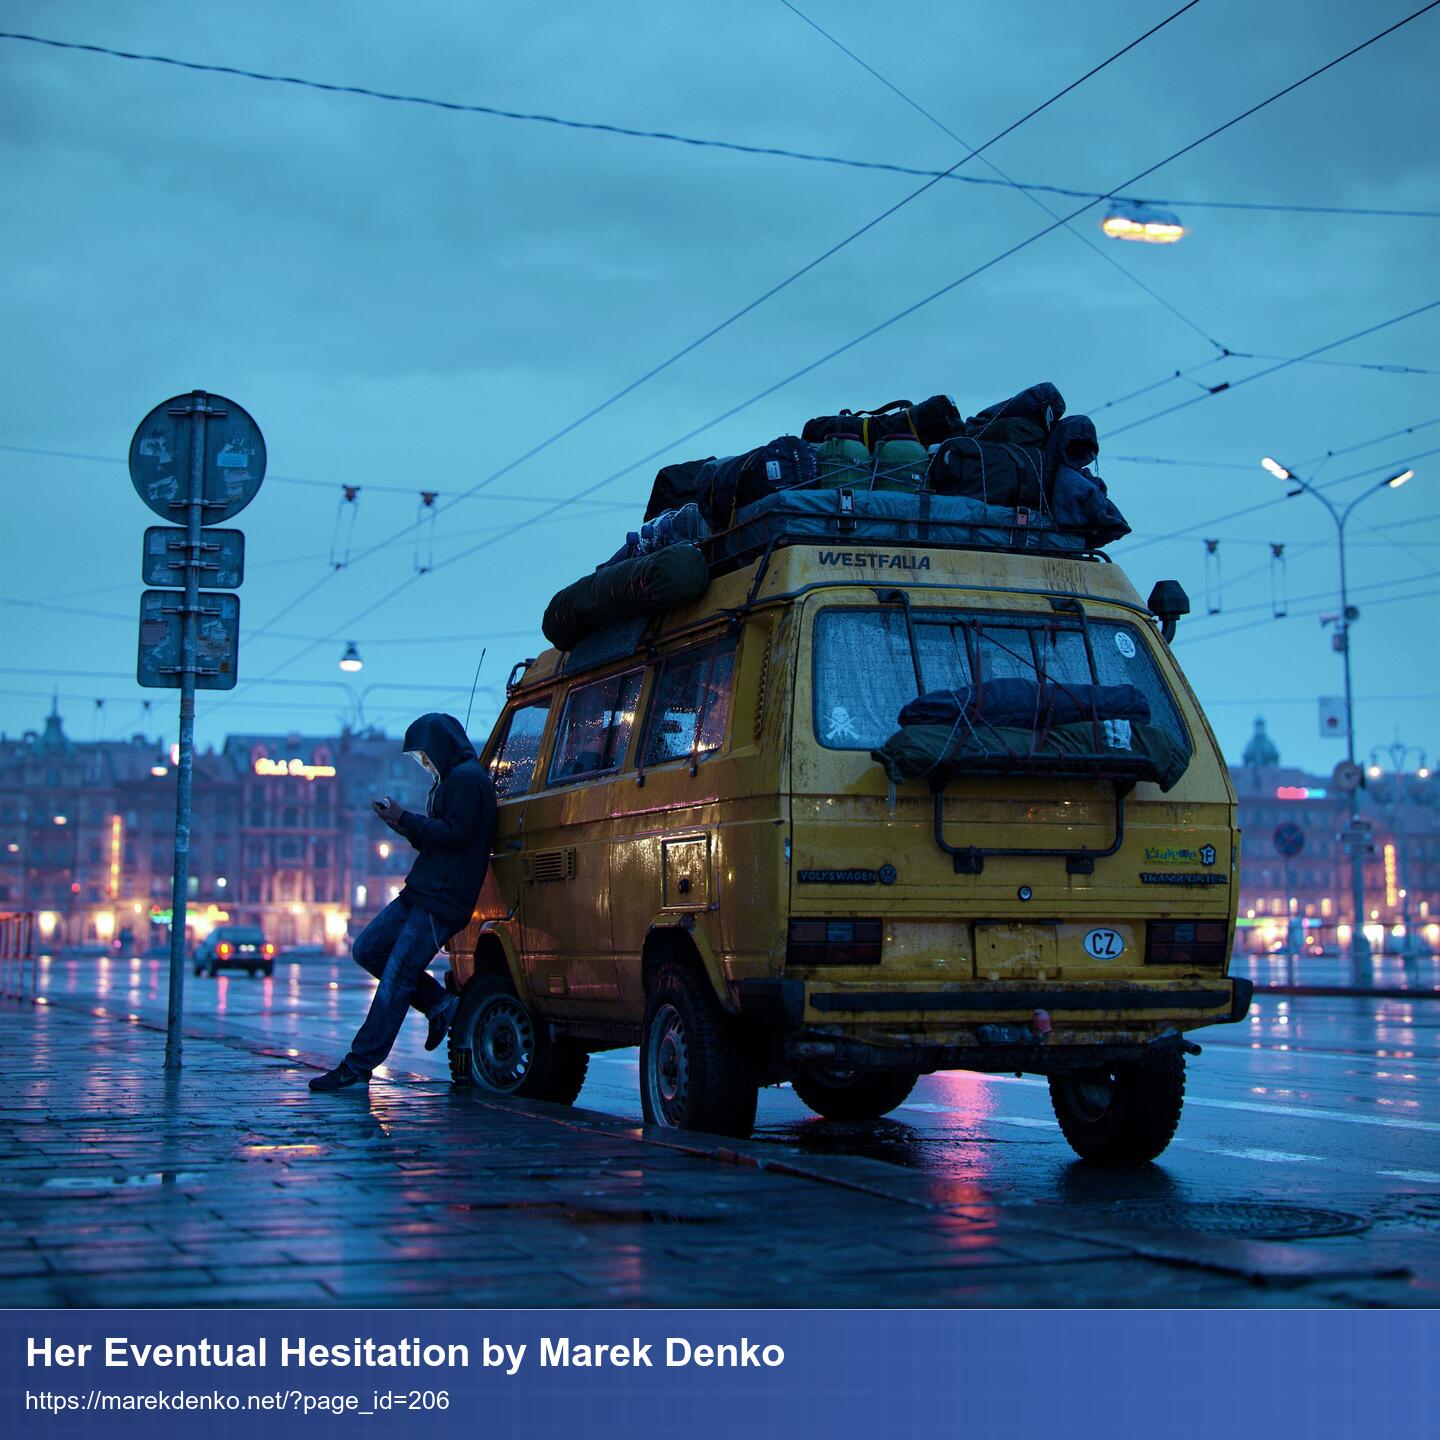 Eine Person lehnt gegen einen gelben VW Bus auf dessen Dach viel Gepäck verstaut ist. Das Wetter ist regnerisch blau. Im Hintergrund warme Lichter der Fenster der Stadt.